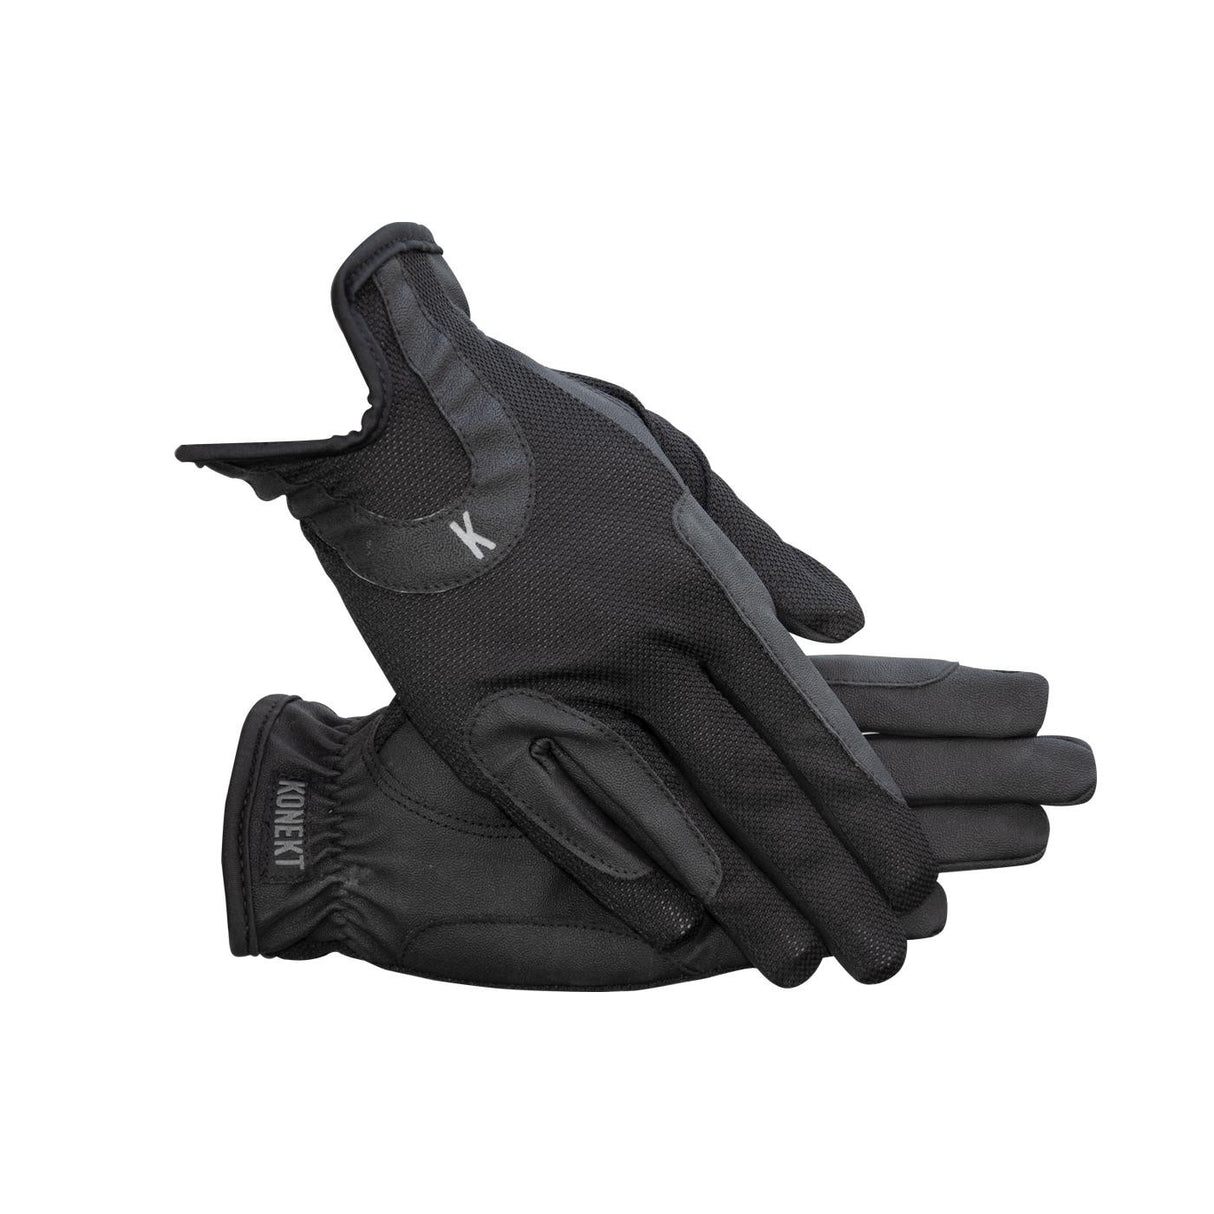 Konekt Mirage Gloves